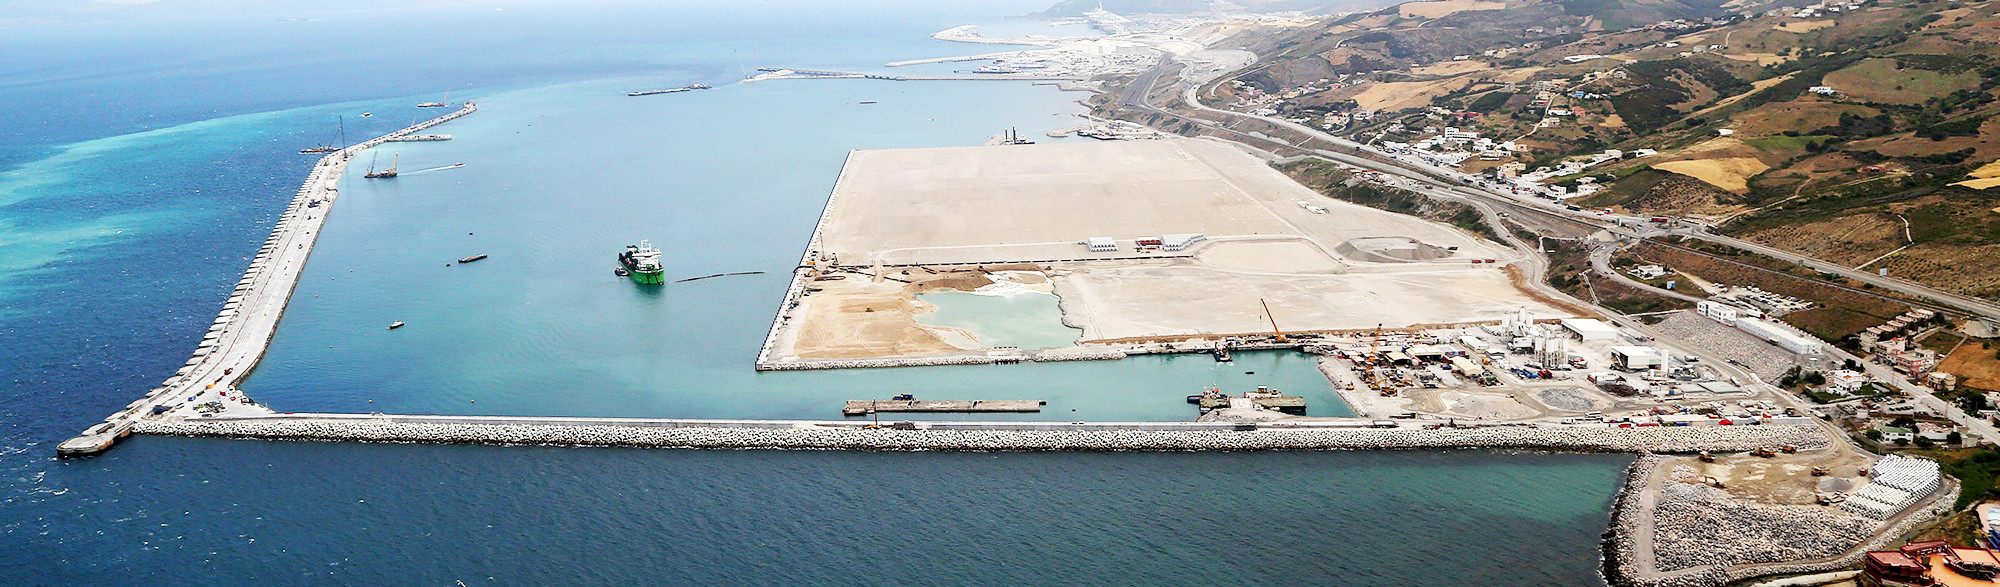 Tanger Med 2 Port